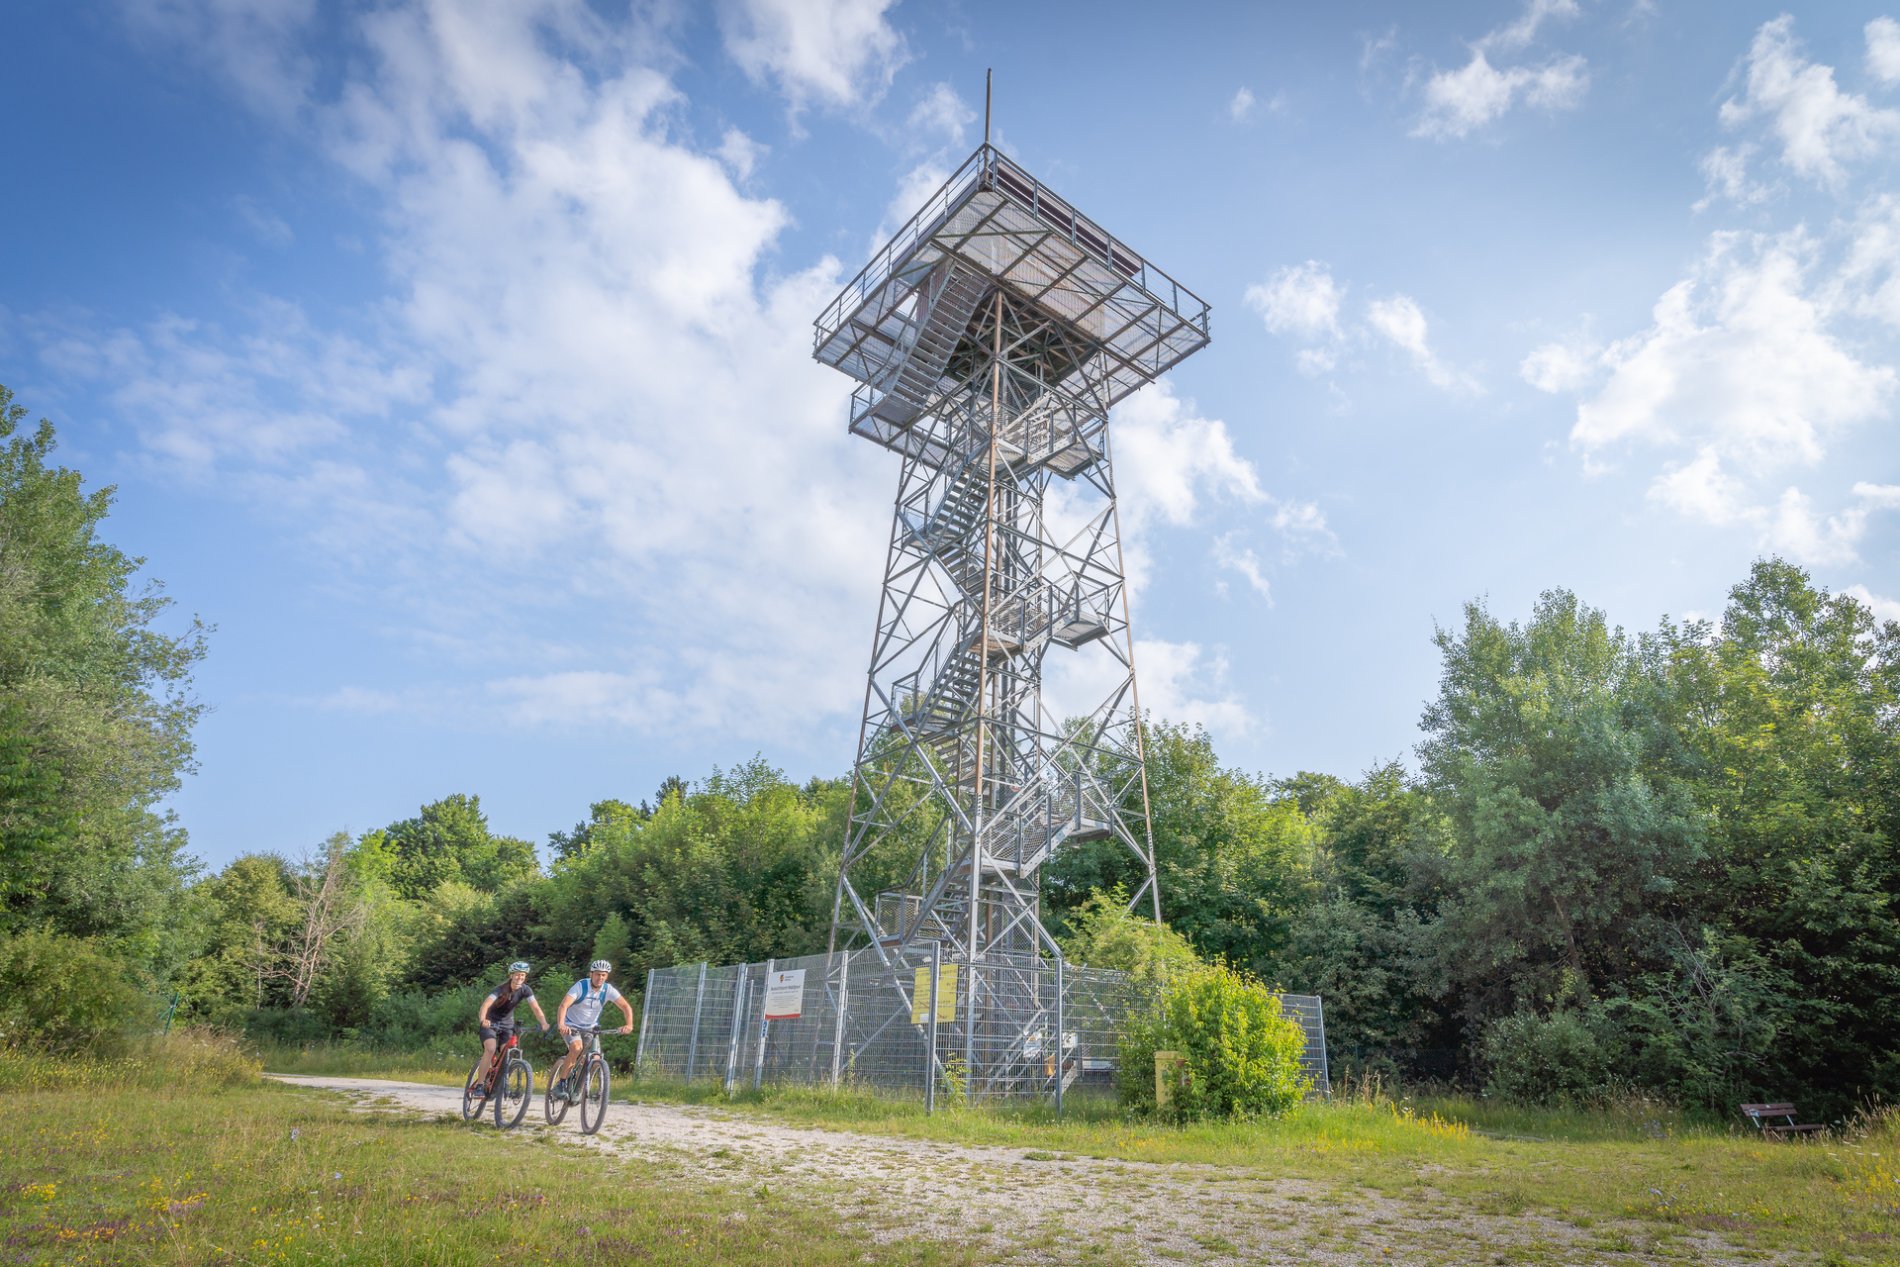 Turm Waldgreut auf dem ehemaligen Truppenübungsplatz in Münsingen im Biosphärengebiet Schwäbische Alb. Ein hoher Stahlgitterturm, der von einem Metallzaun umgeben ist. Davor ist ein Schotterweg auf dem zwei Radfahrer*innen fahren.